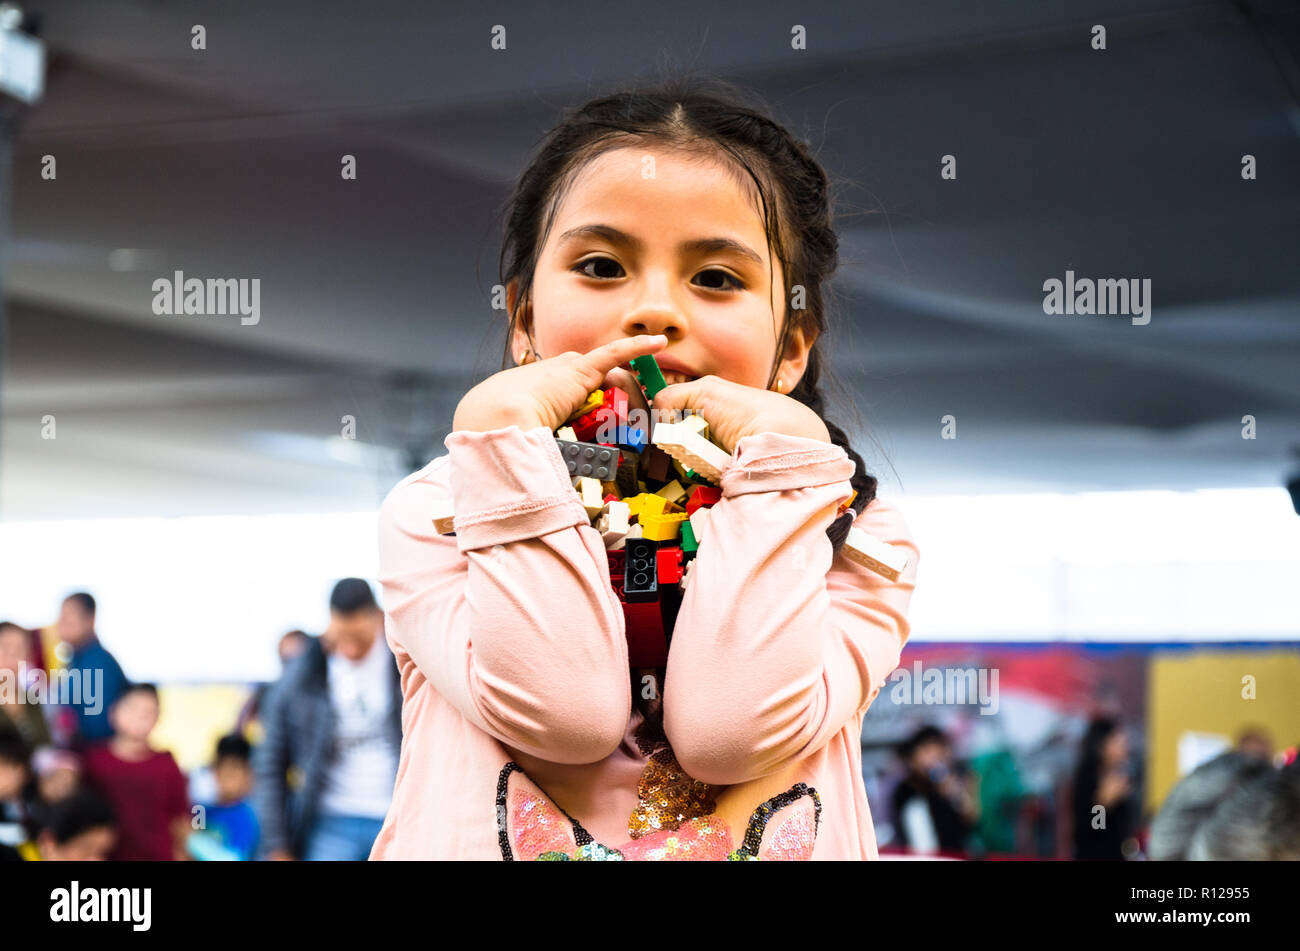 Kleines Mädchen mit Zöpfen holding Spielzeug Bausteine und lächelnd Stockfoto